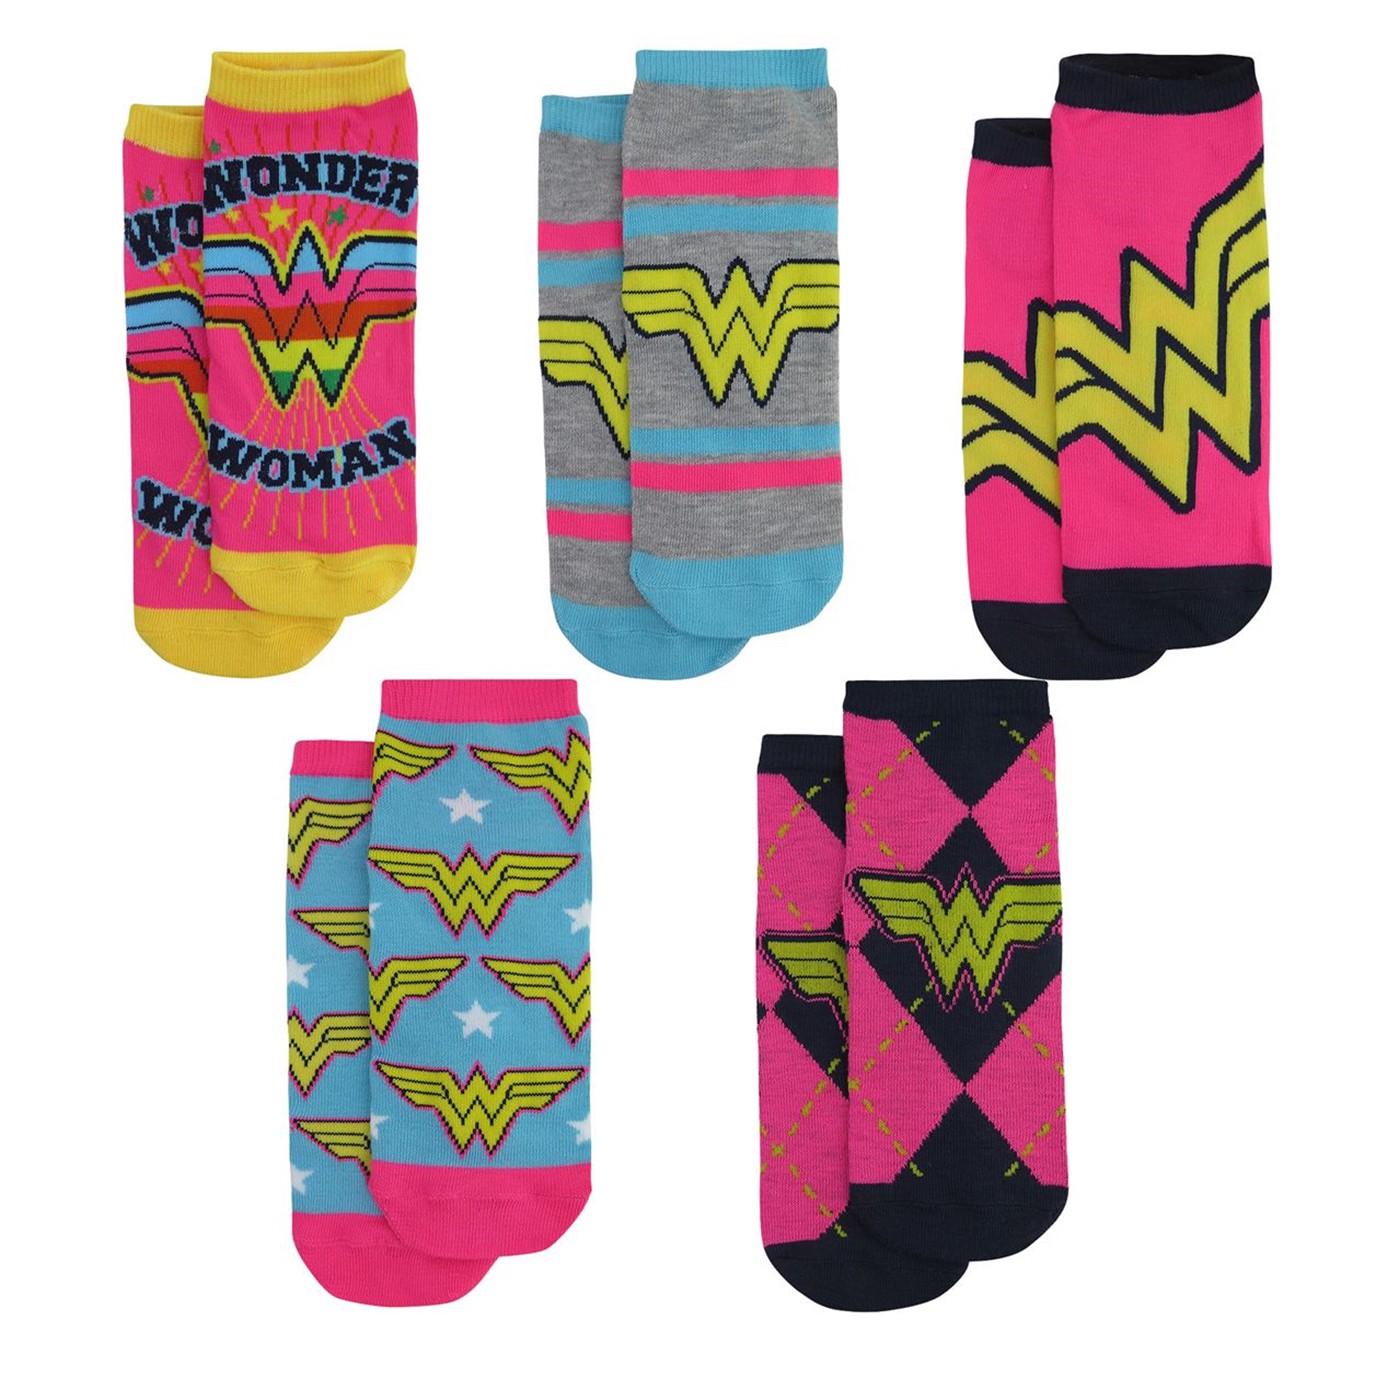 Wonder Woman Neon Women's Low Cut Sock 5-Pack